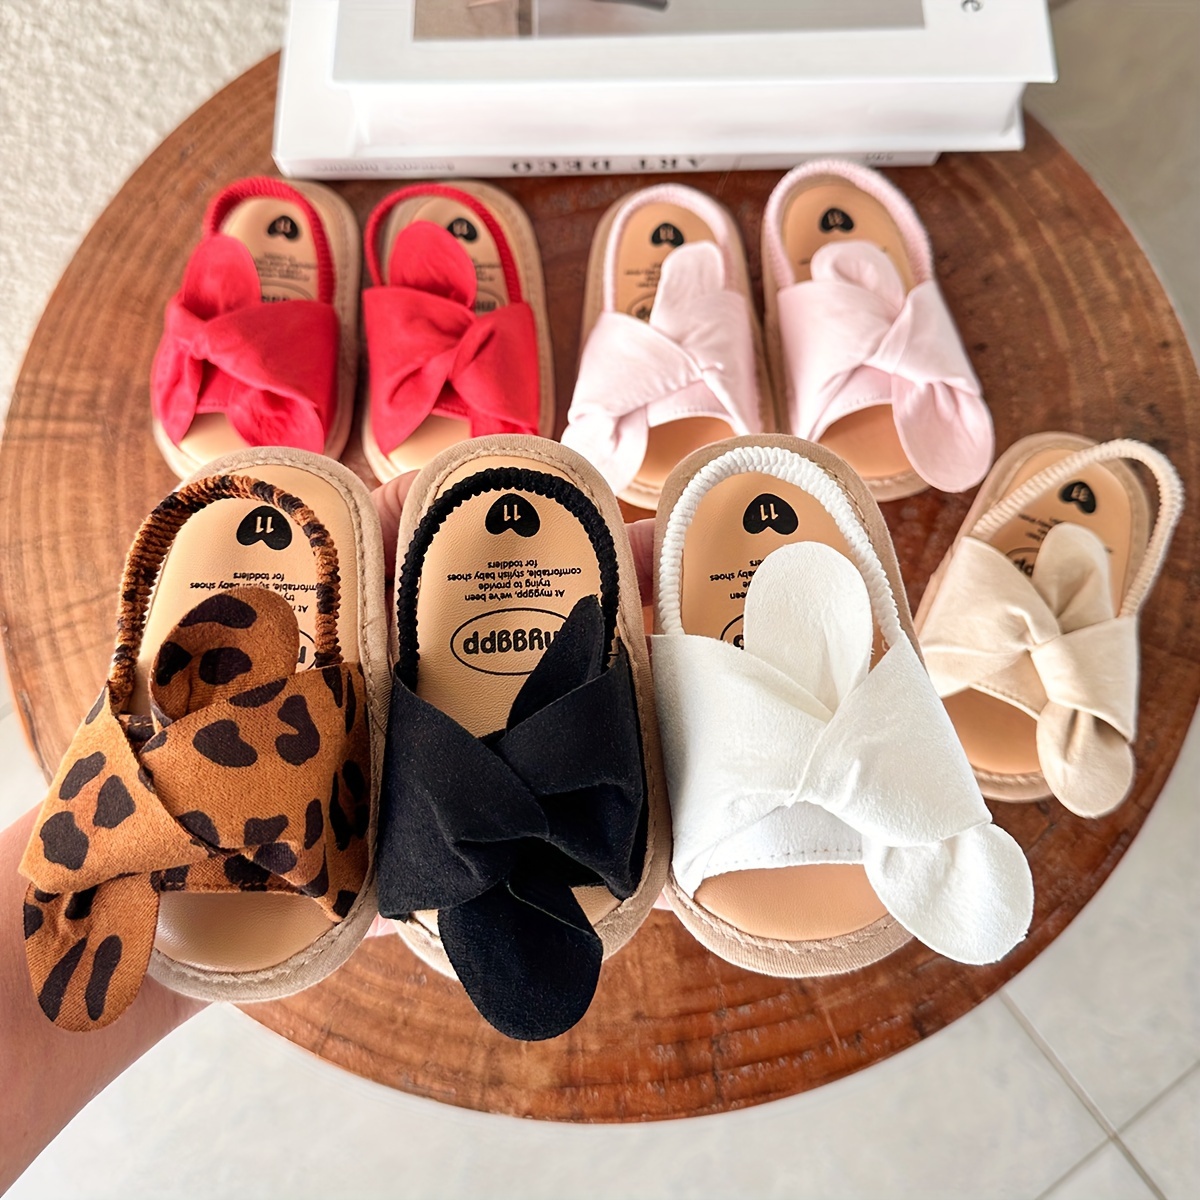 Baby / Toddler Floral Decor Sandals Prewalker Shoes